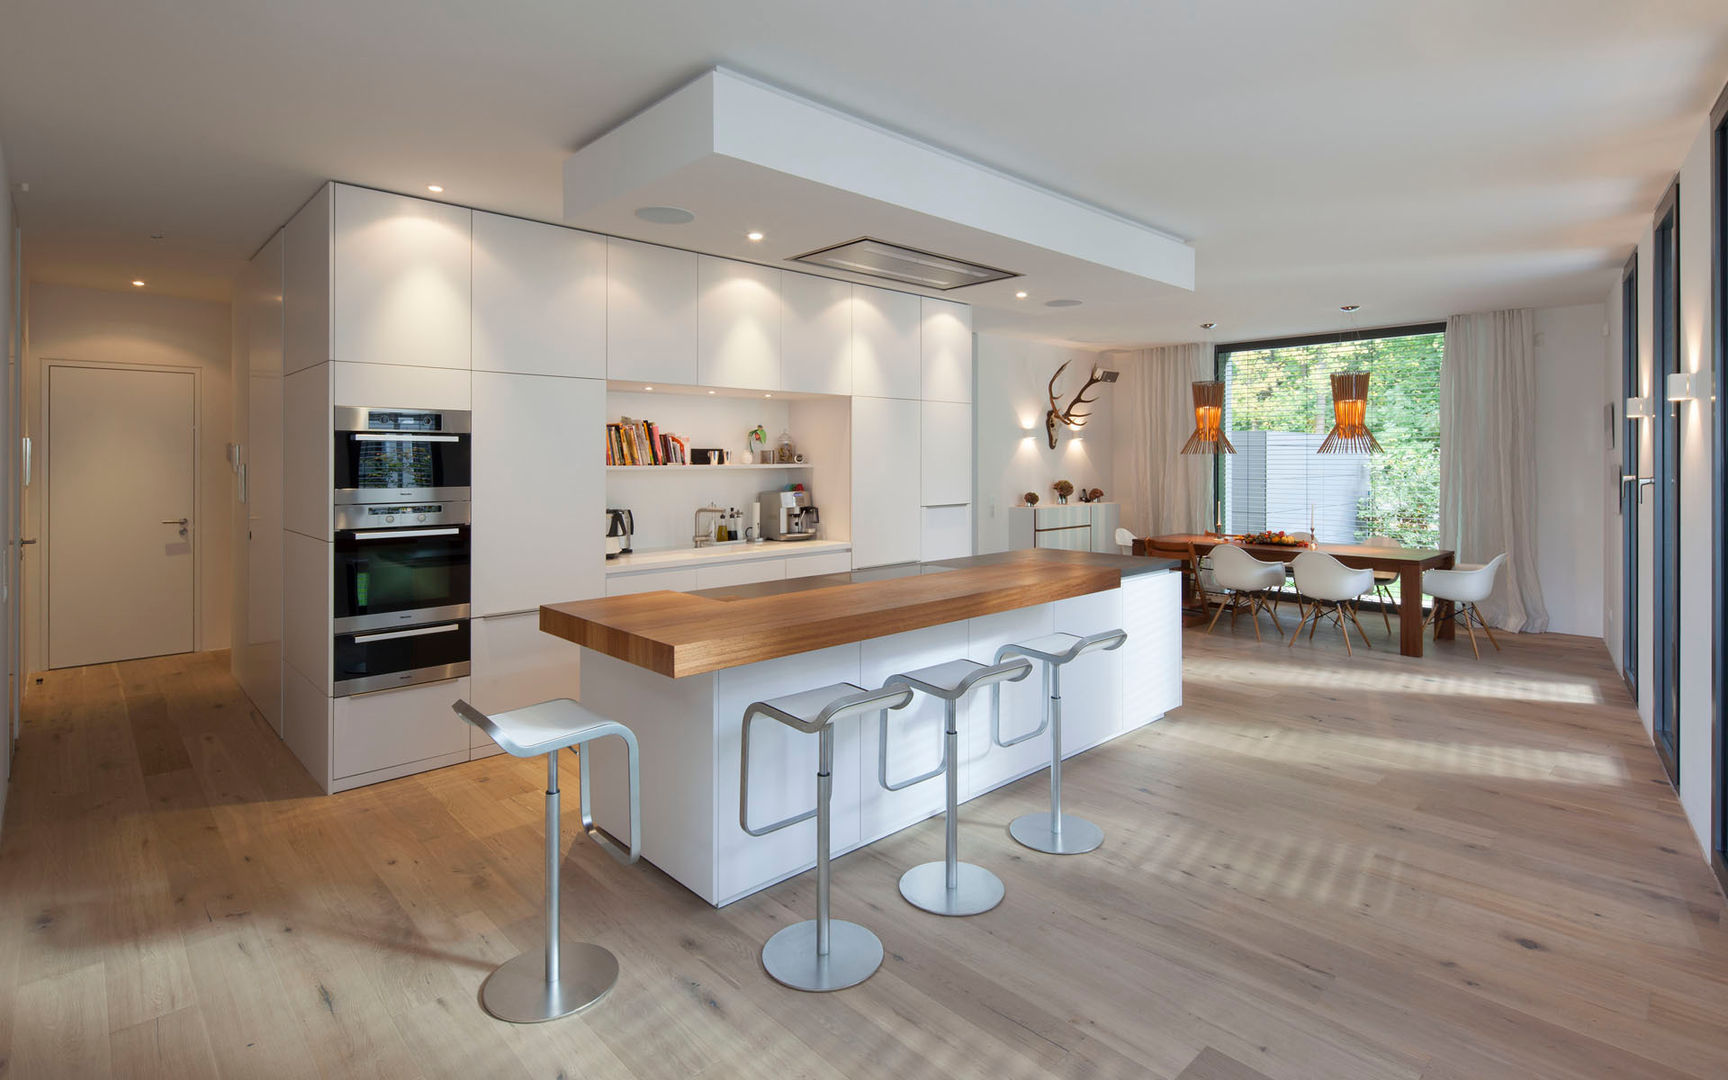 Küche S., rother küchenkonzepte + möbeldesign Gmbh rother küchenkonzepte + möbeldesign Gmbh Modern Mutfak